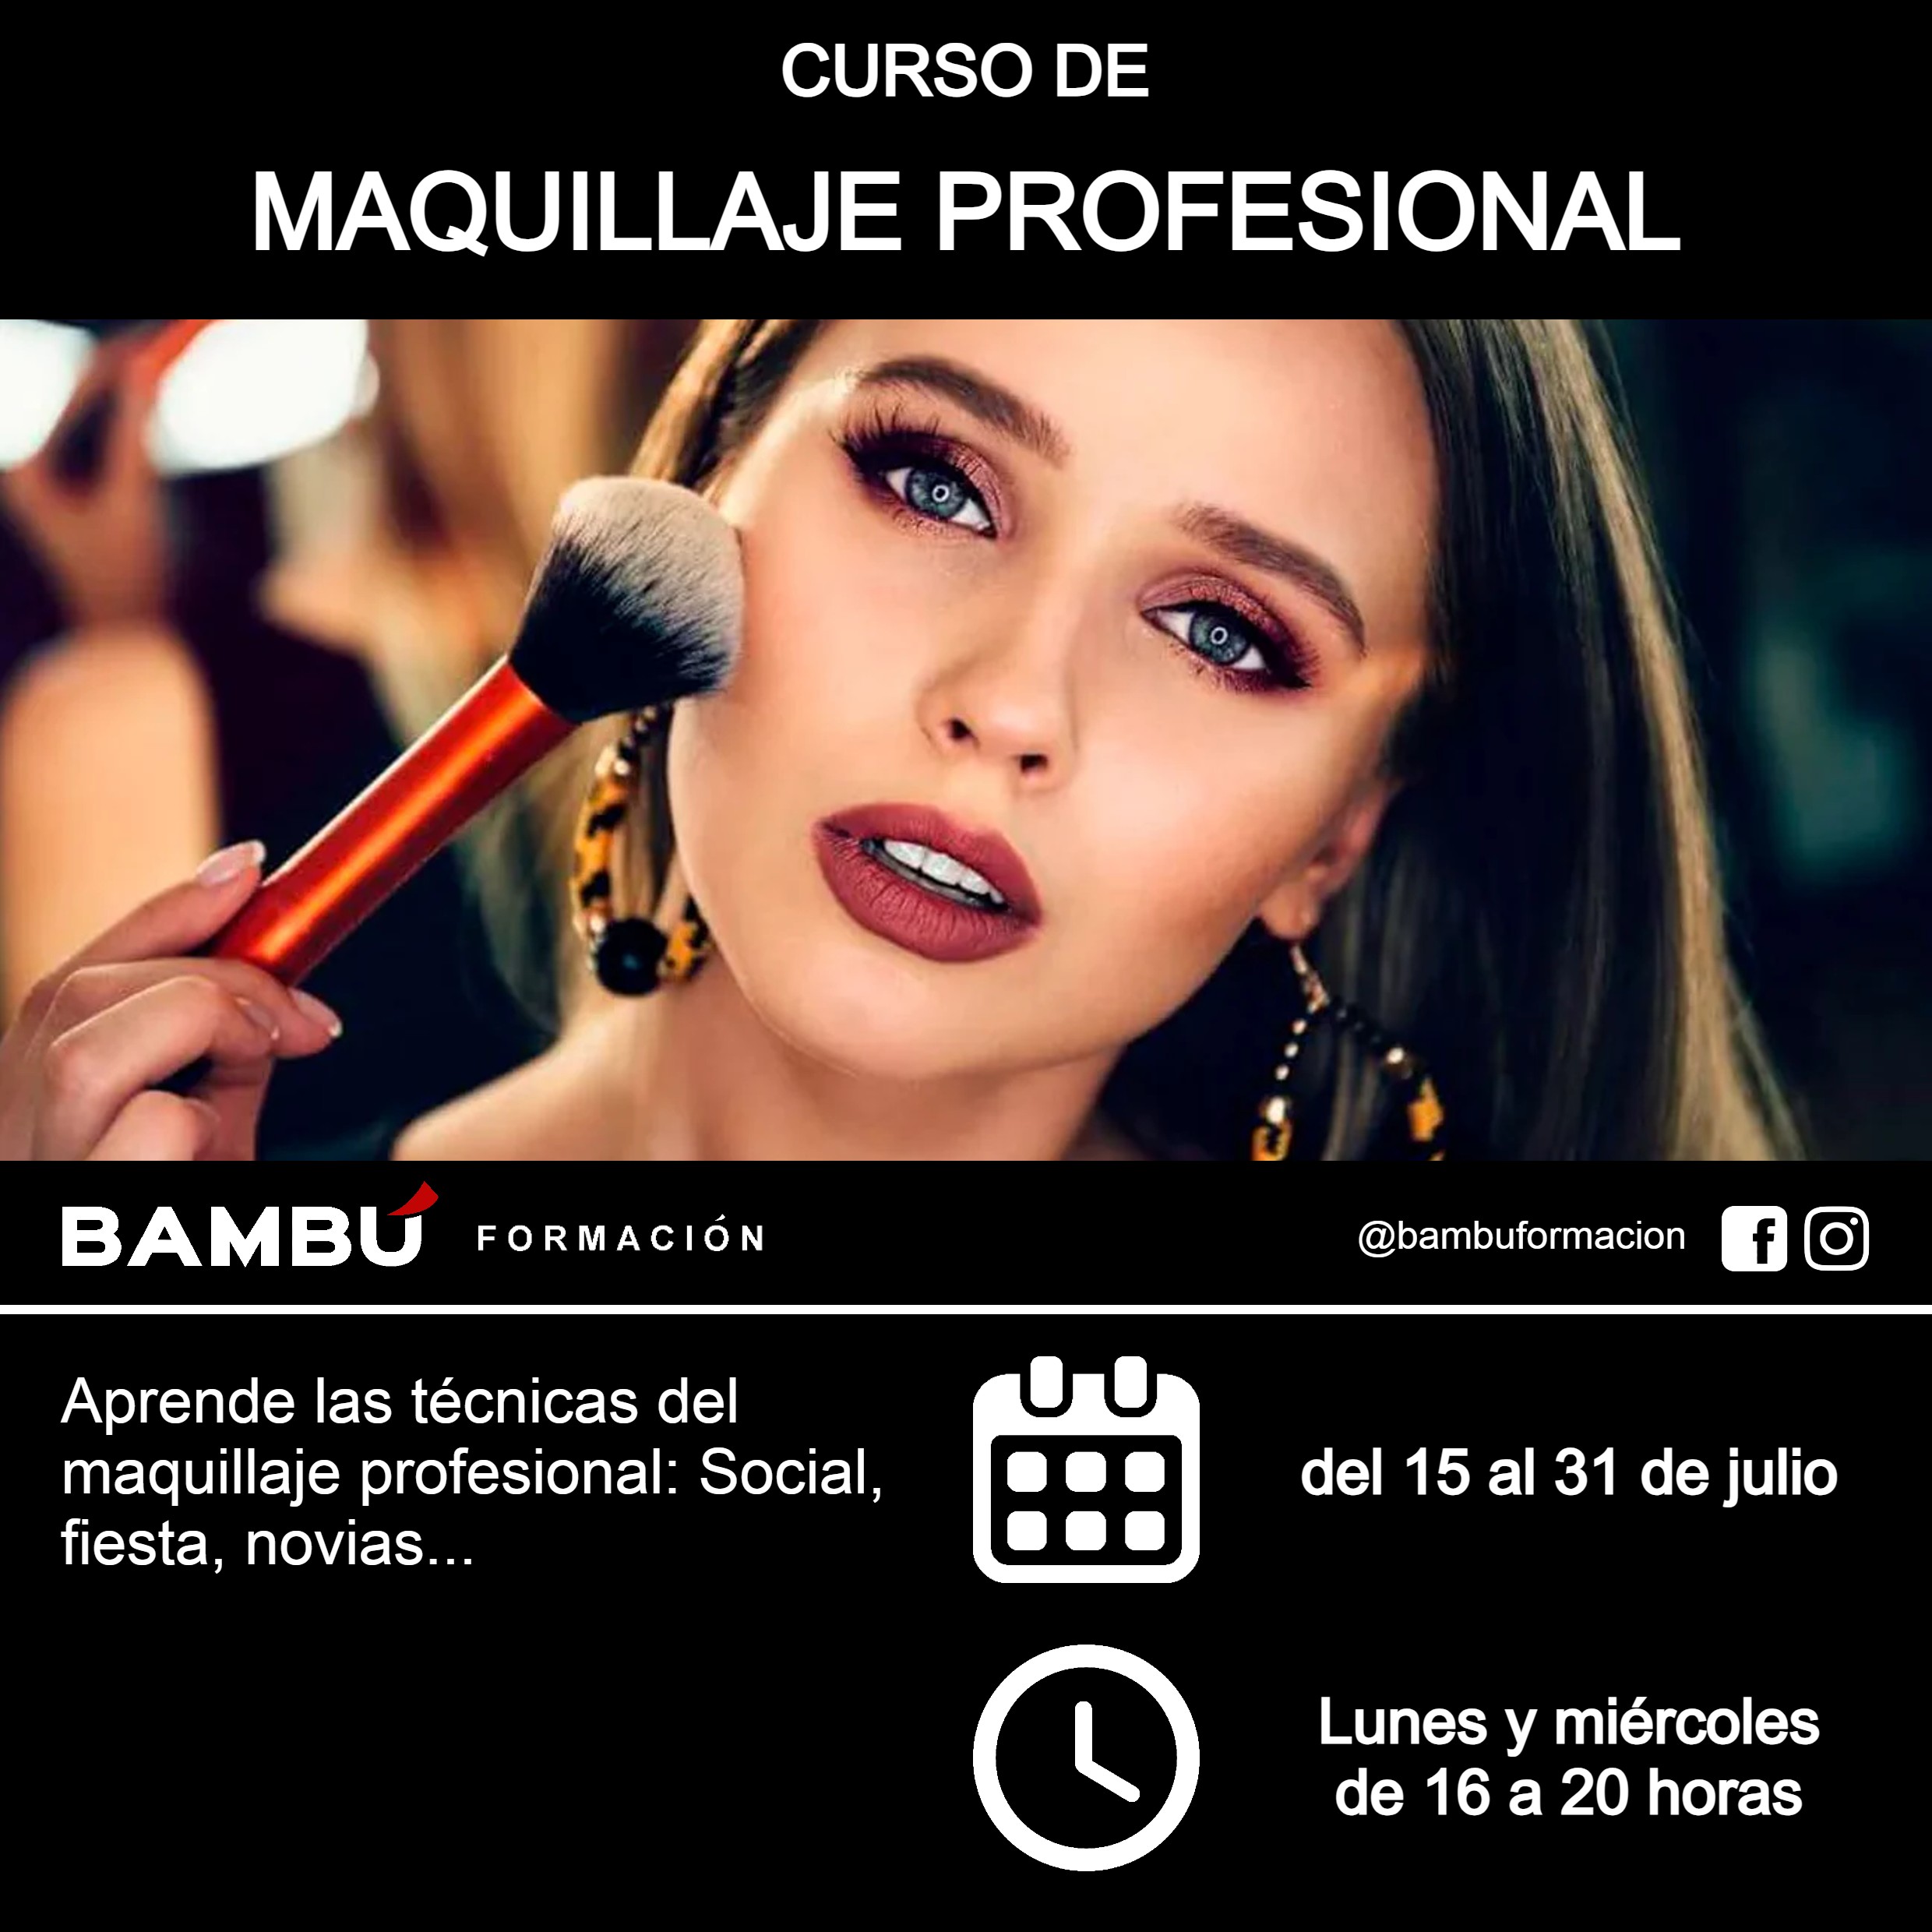 Cursos de maquillaje profesional en La Orotava - Formación Bambú